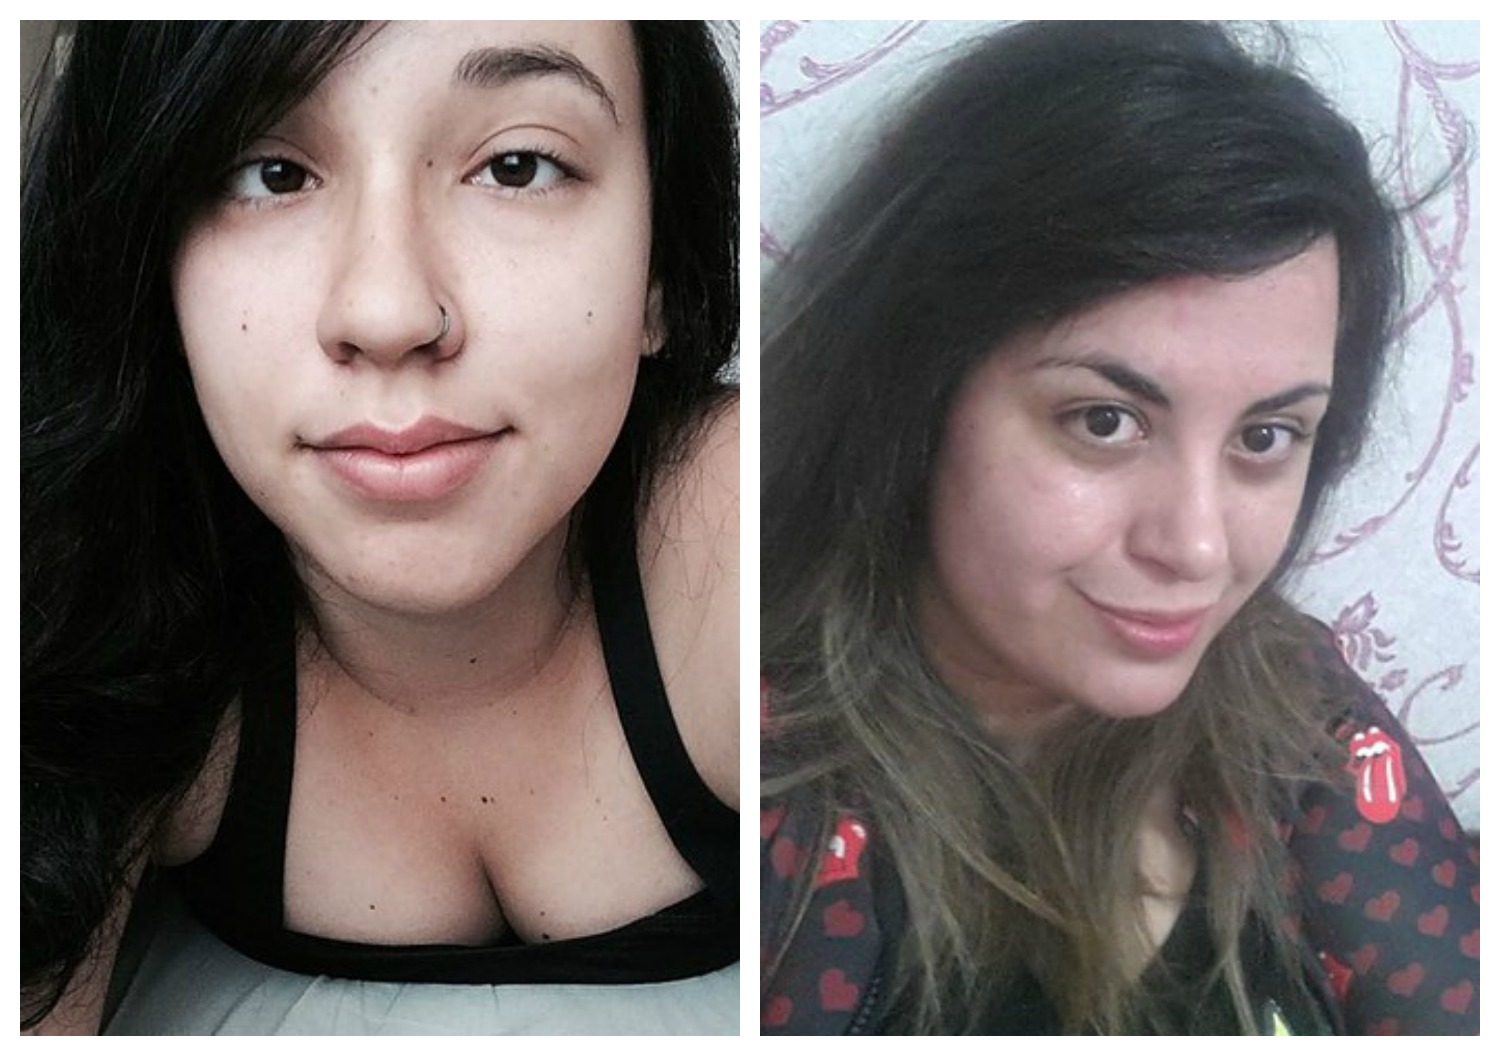 20+ Mulheres compartilharam suas selfies sem maquiagem e o resultado foi  melhor do que imaginavam / Incrível